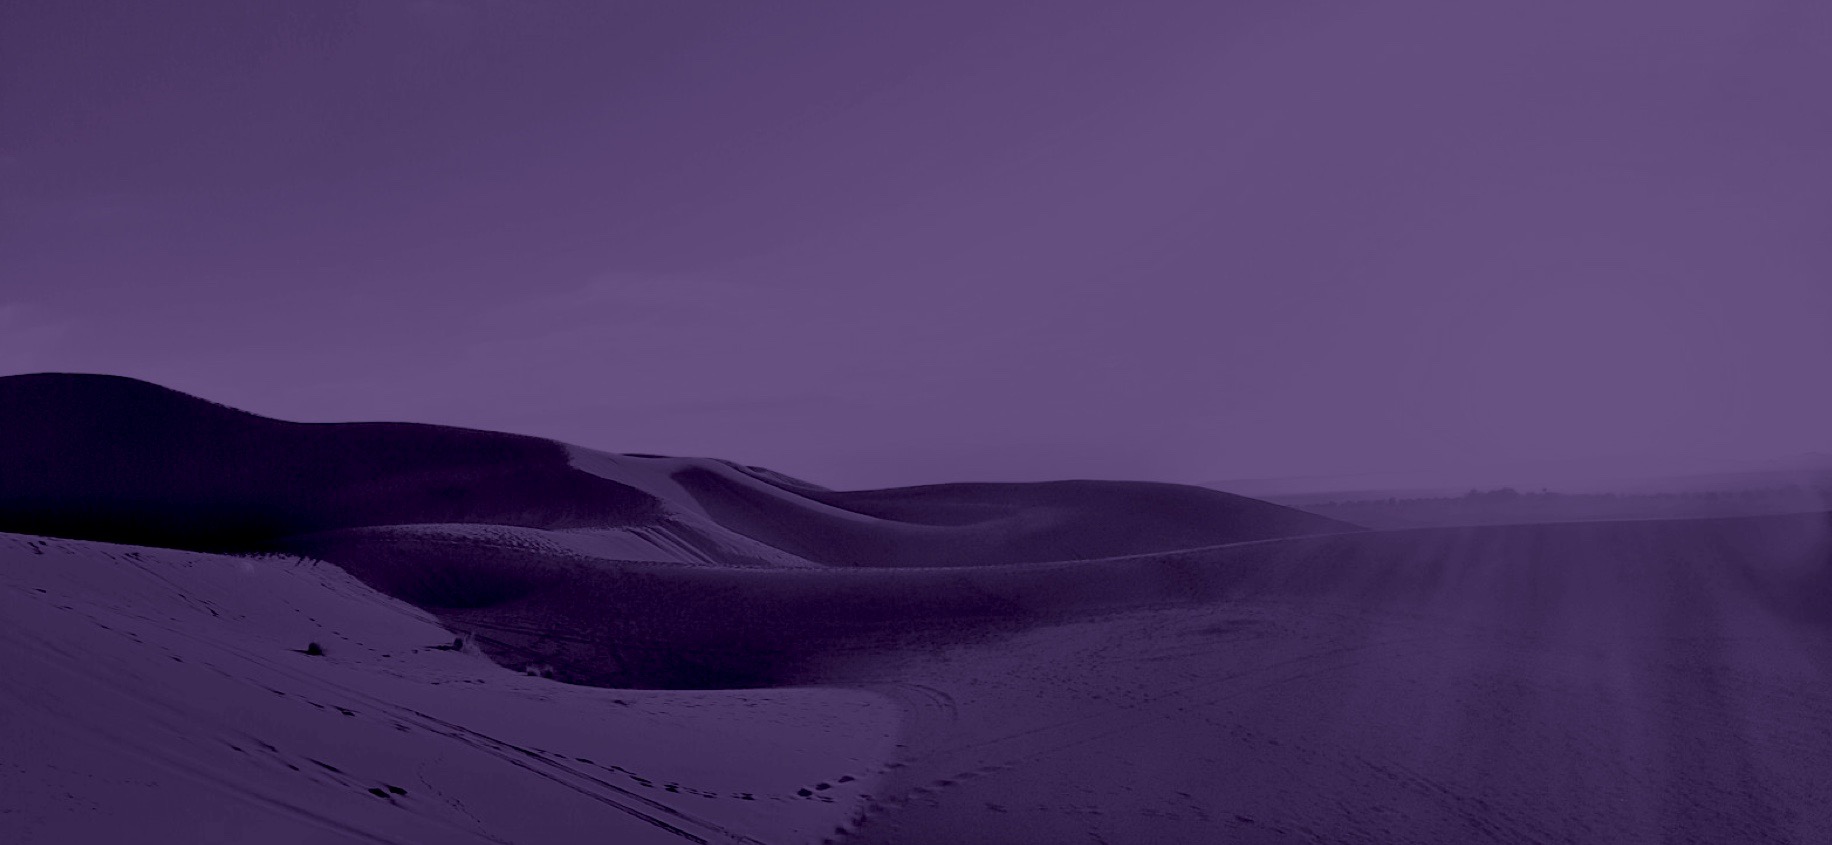 Desert violet